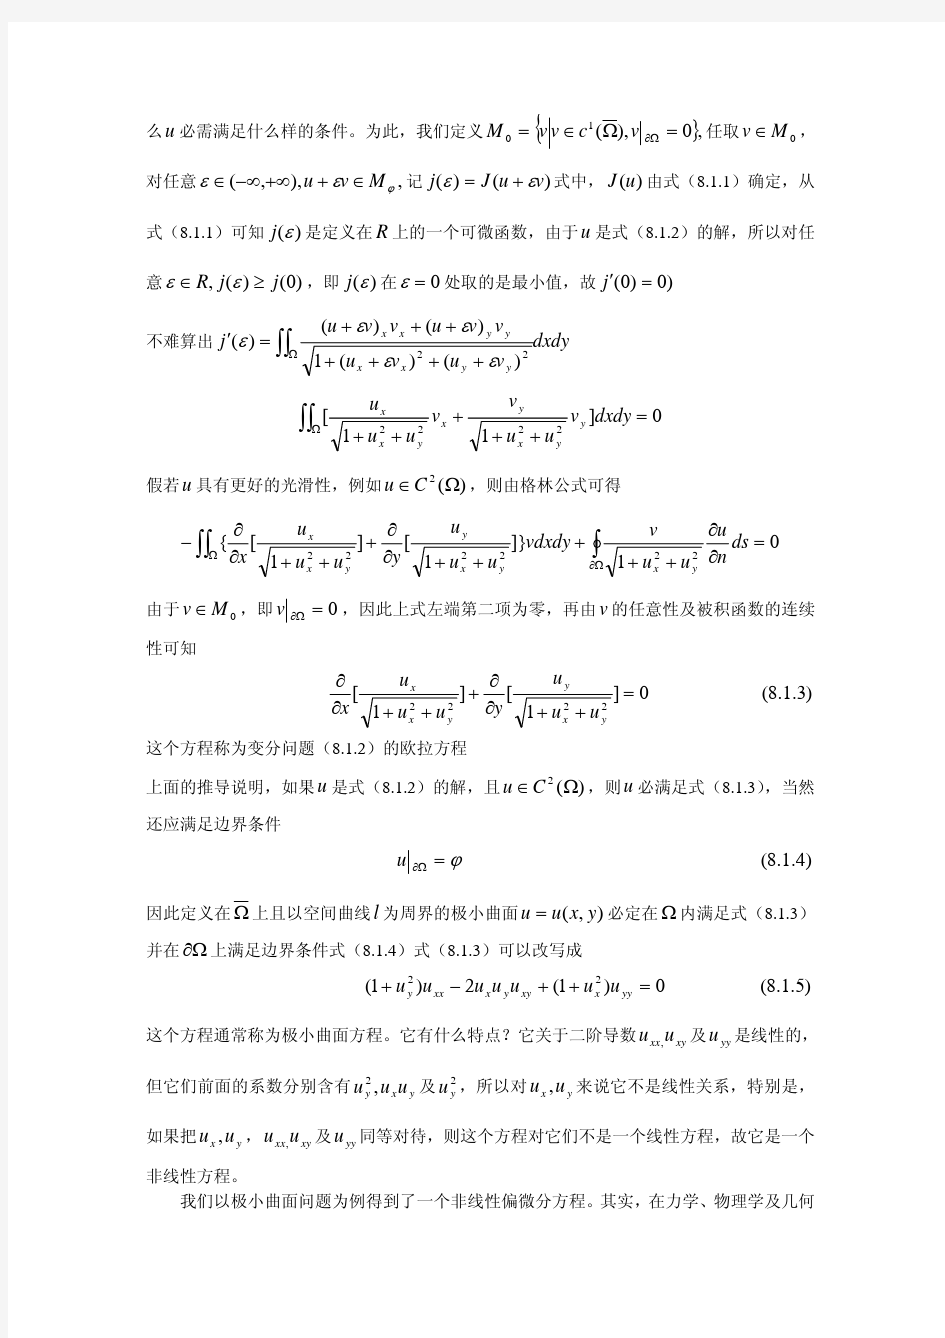 数学物理方程第八章_非线性偏微分方程与积分方程